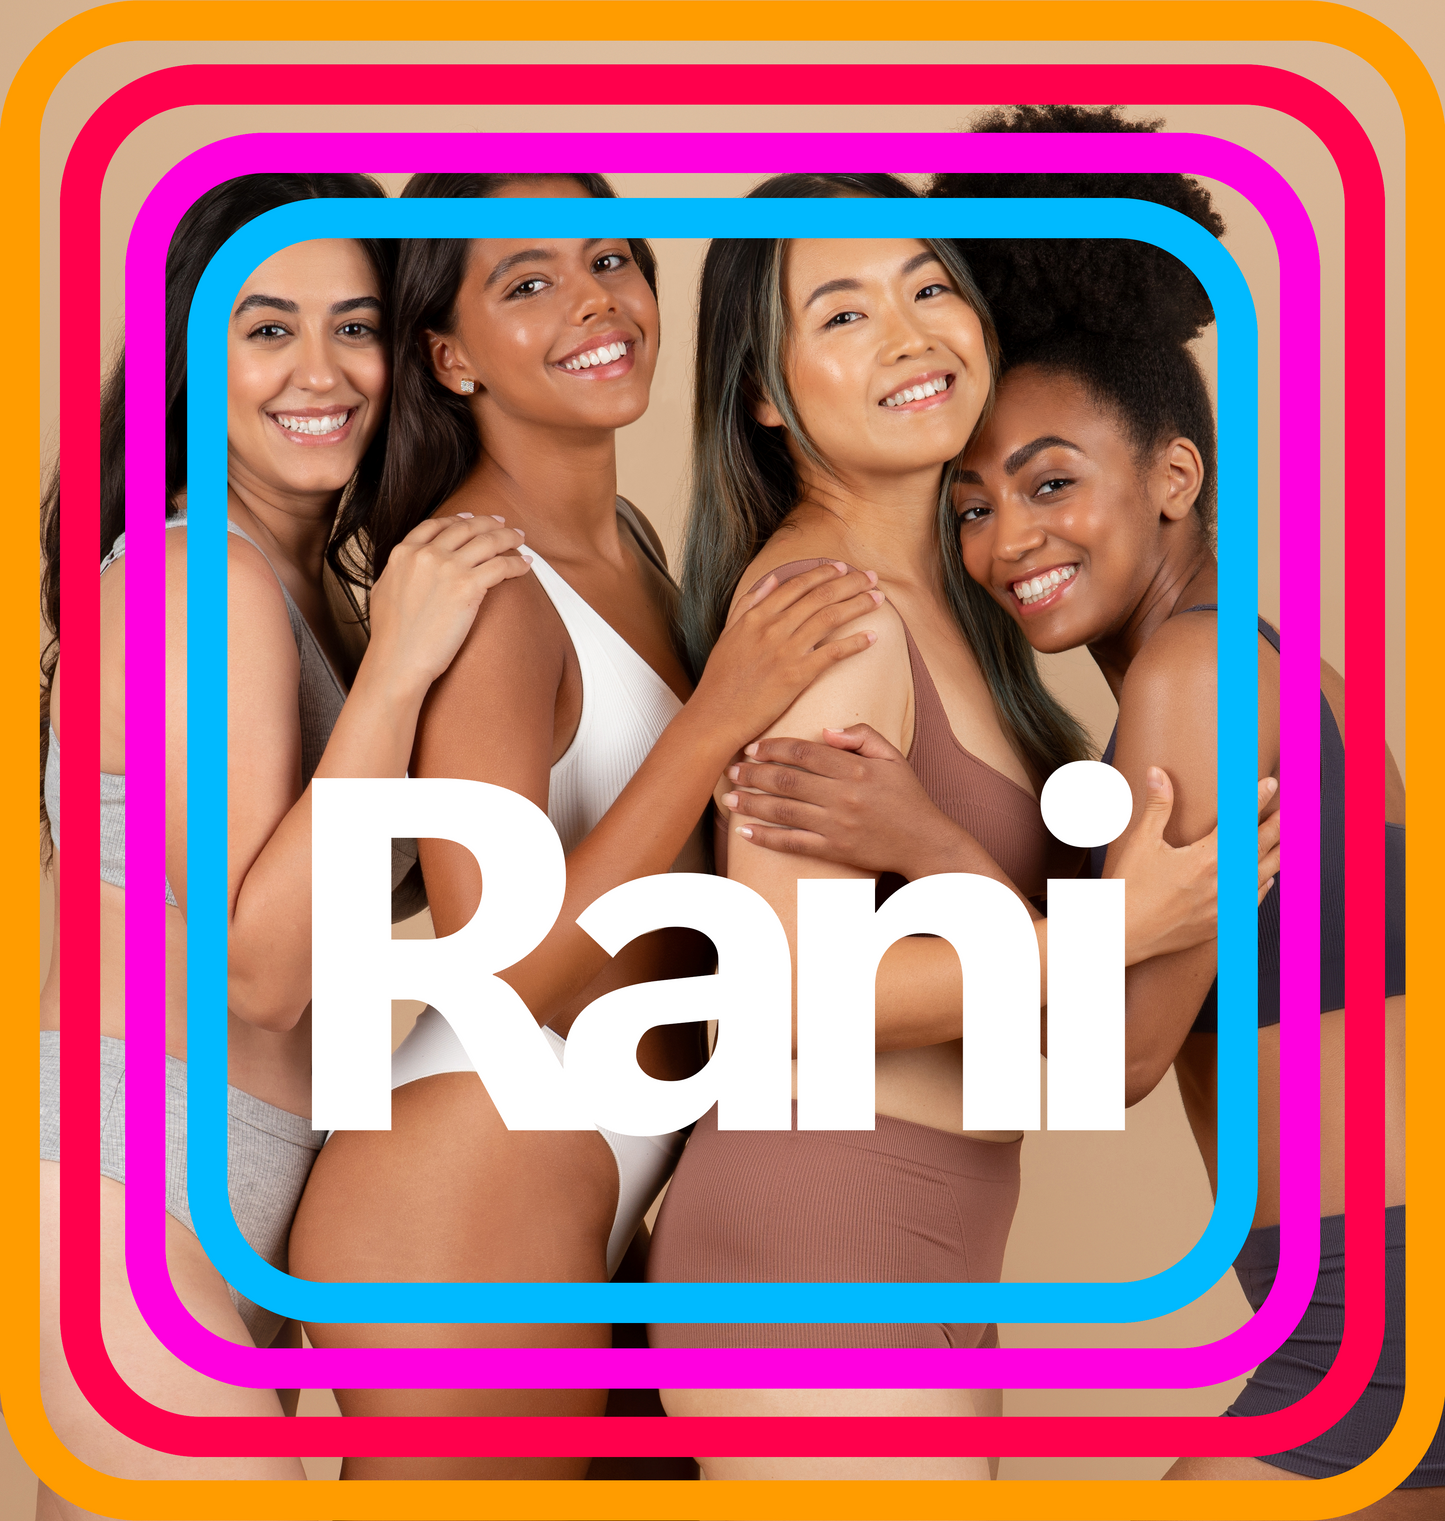 The Rani